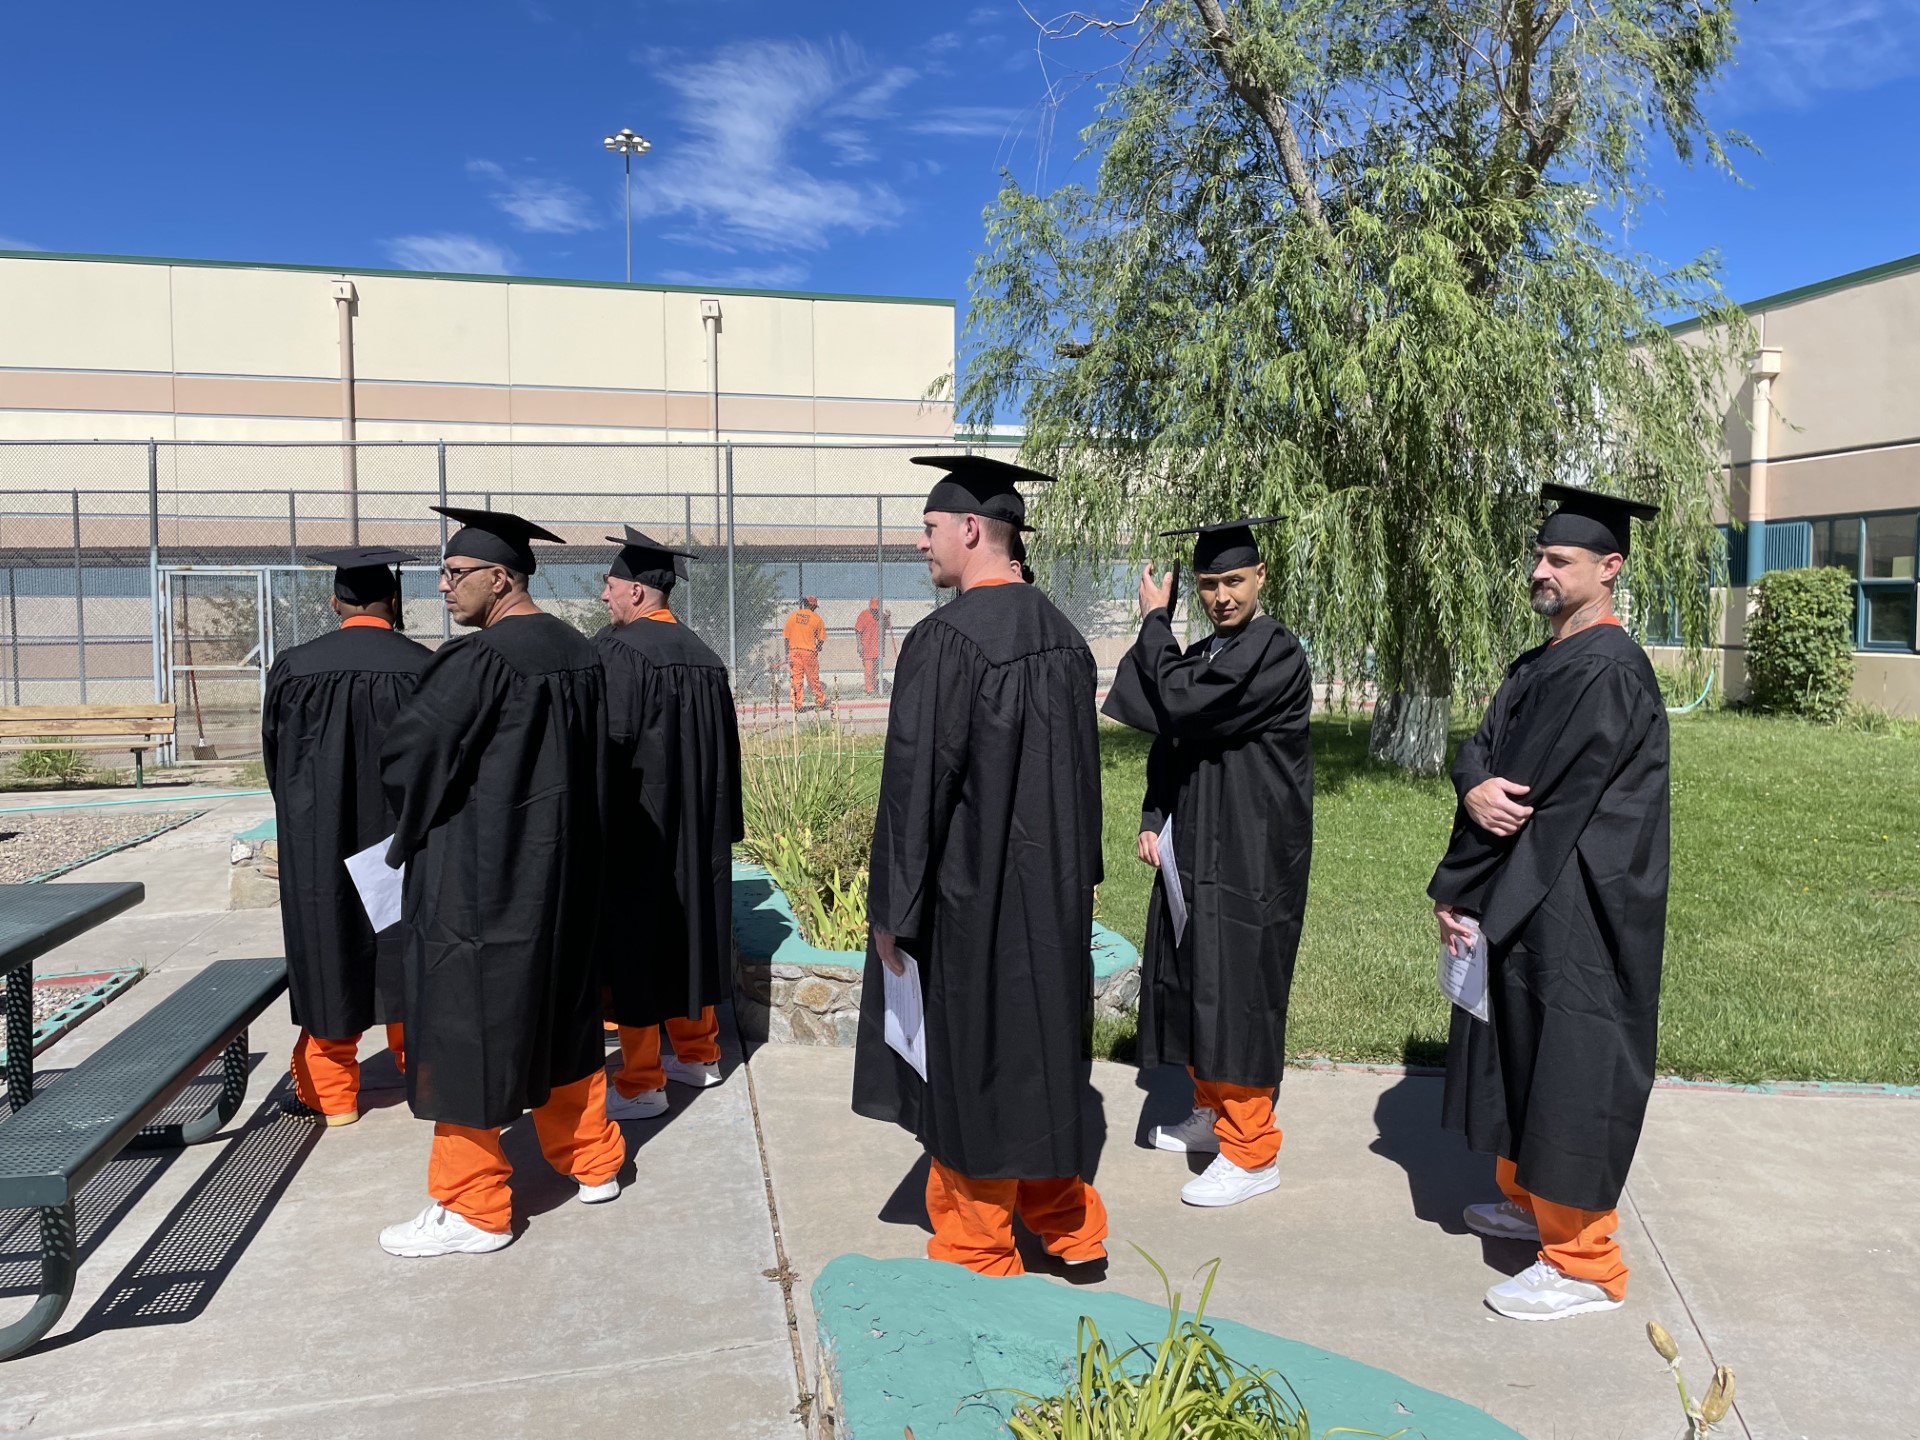 Inmate at graduation